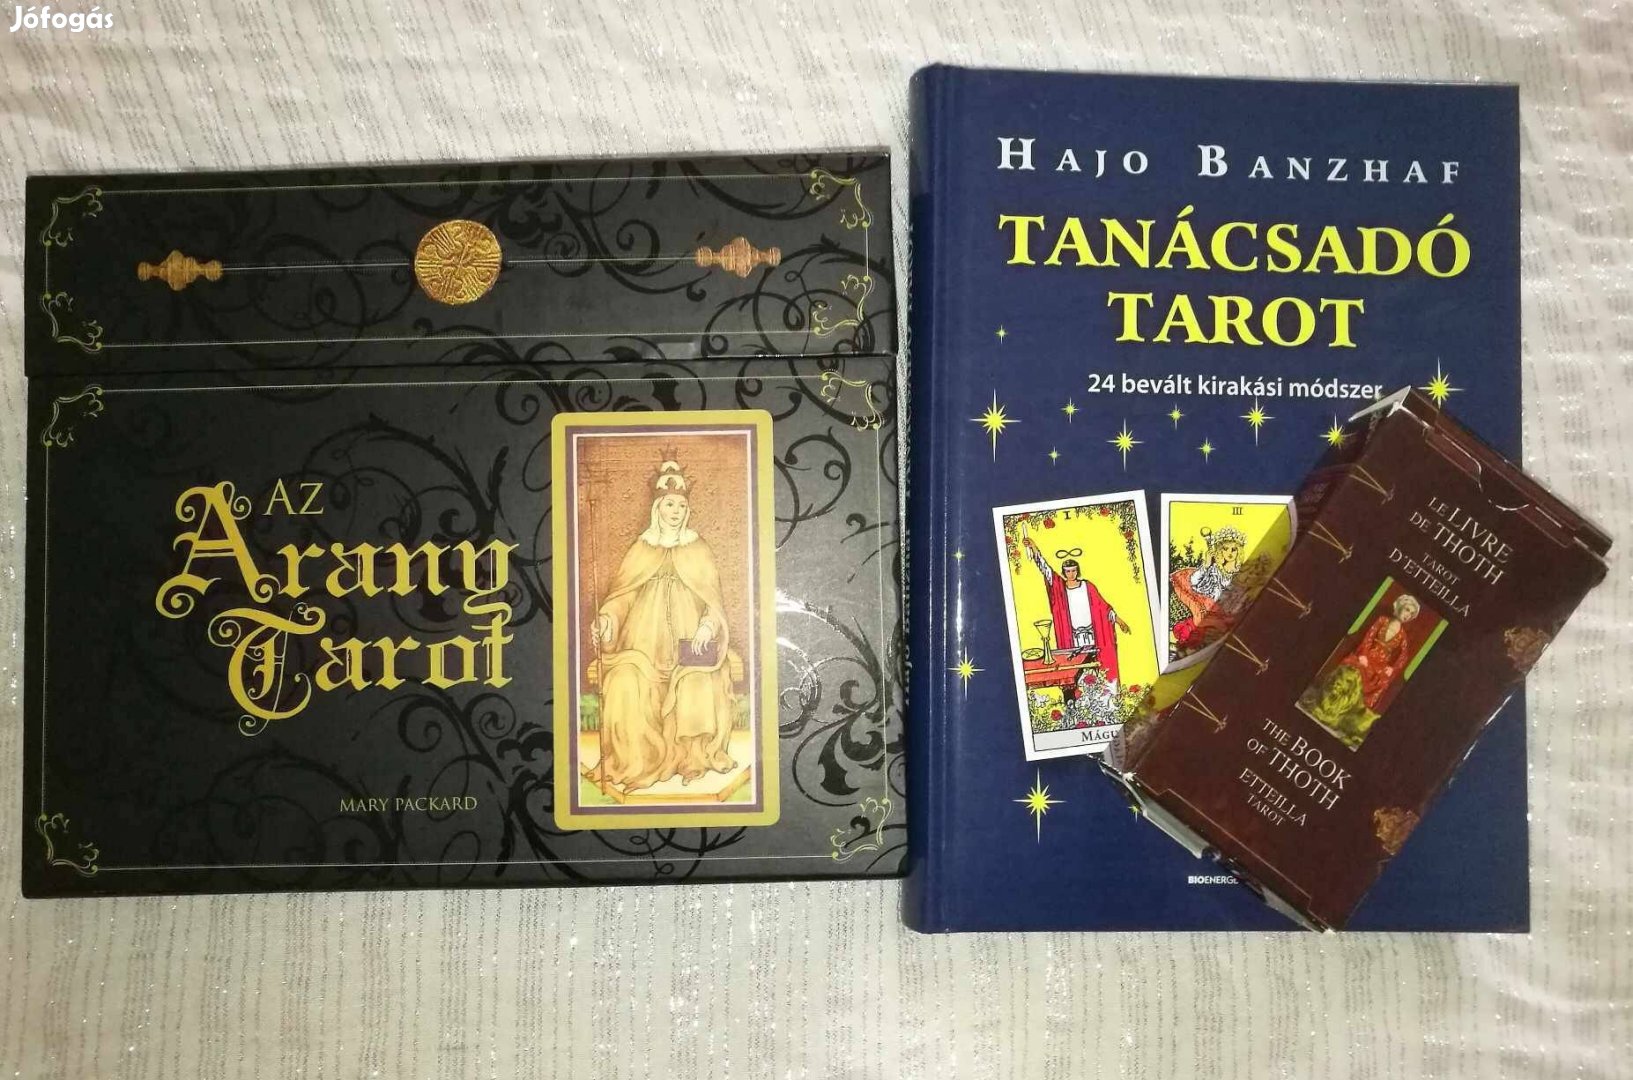 Jóskártya, Arany tarot és Etteilla tarot, Hajo Banzhaf könyvével